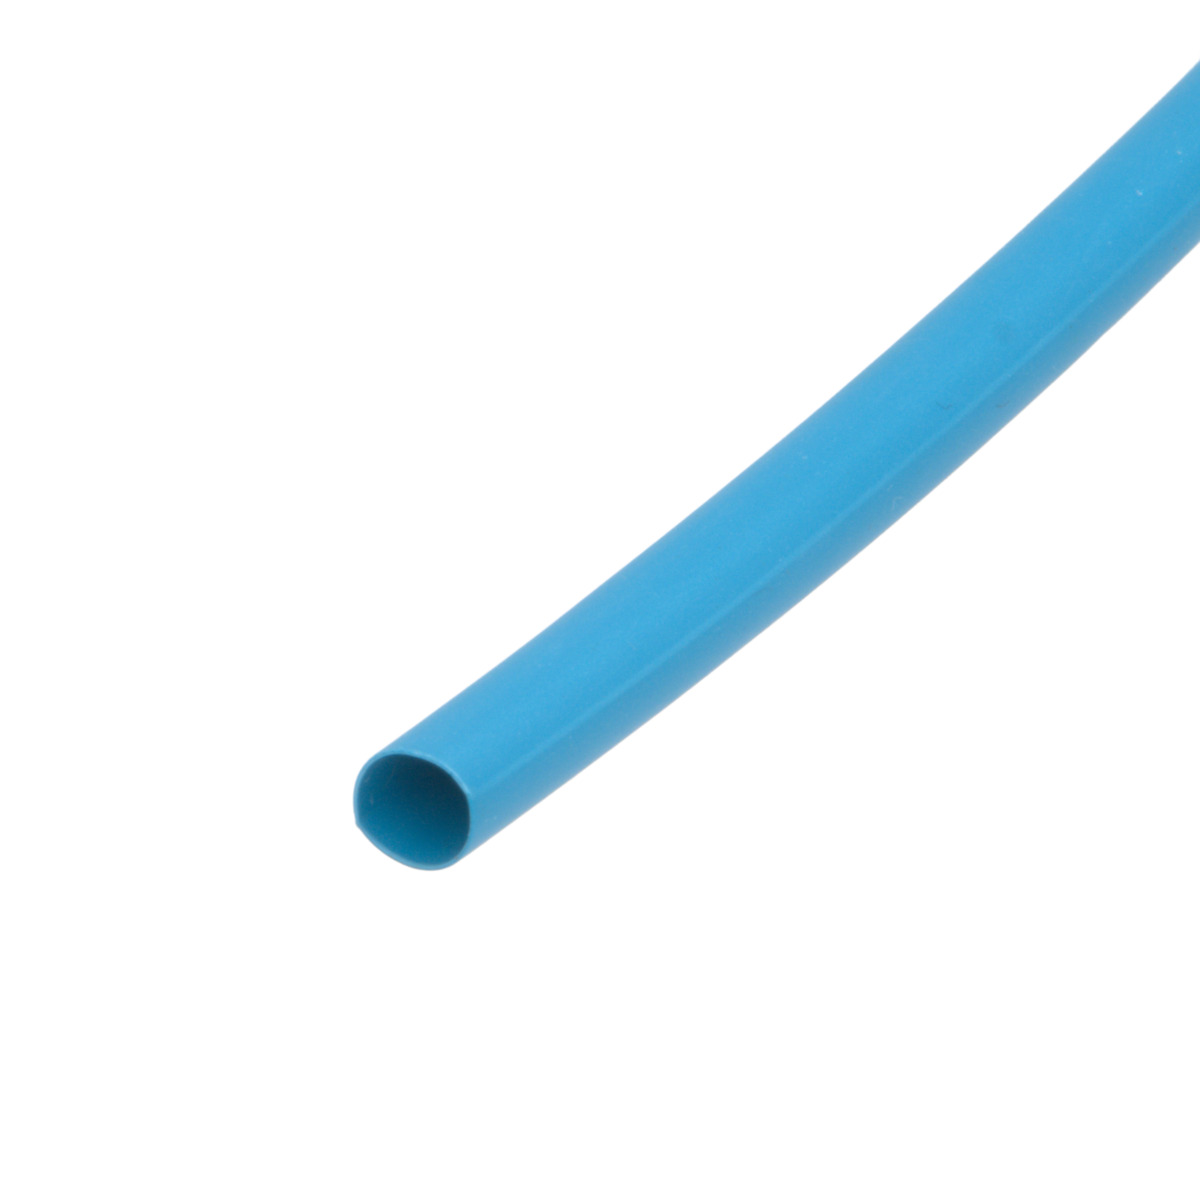 Pack de corte [1.2m] de tubo termorretráctil 2:1 Ø4.8mm azul – Poliolefina libre de halógeno e ignífugo [x25]